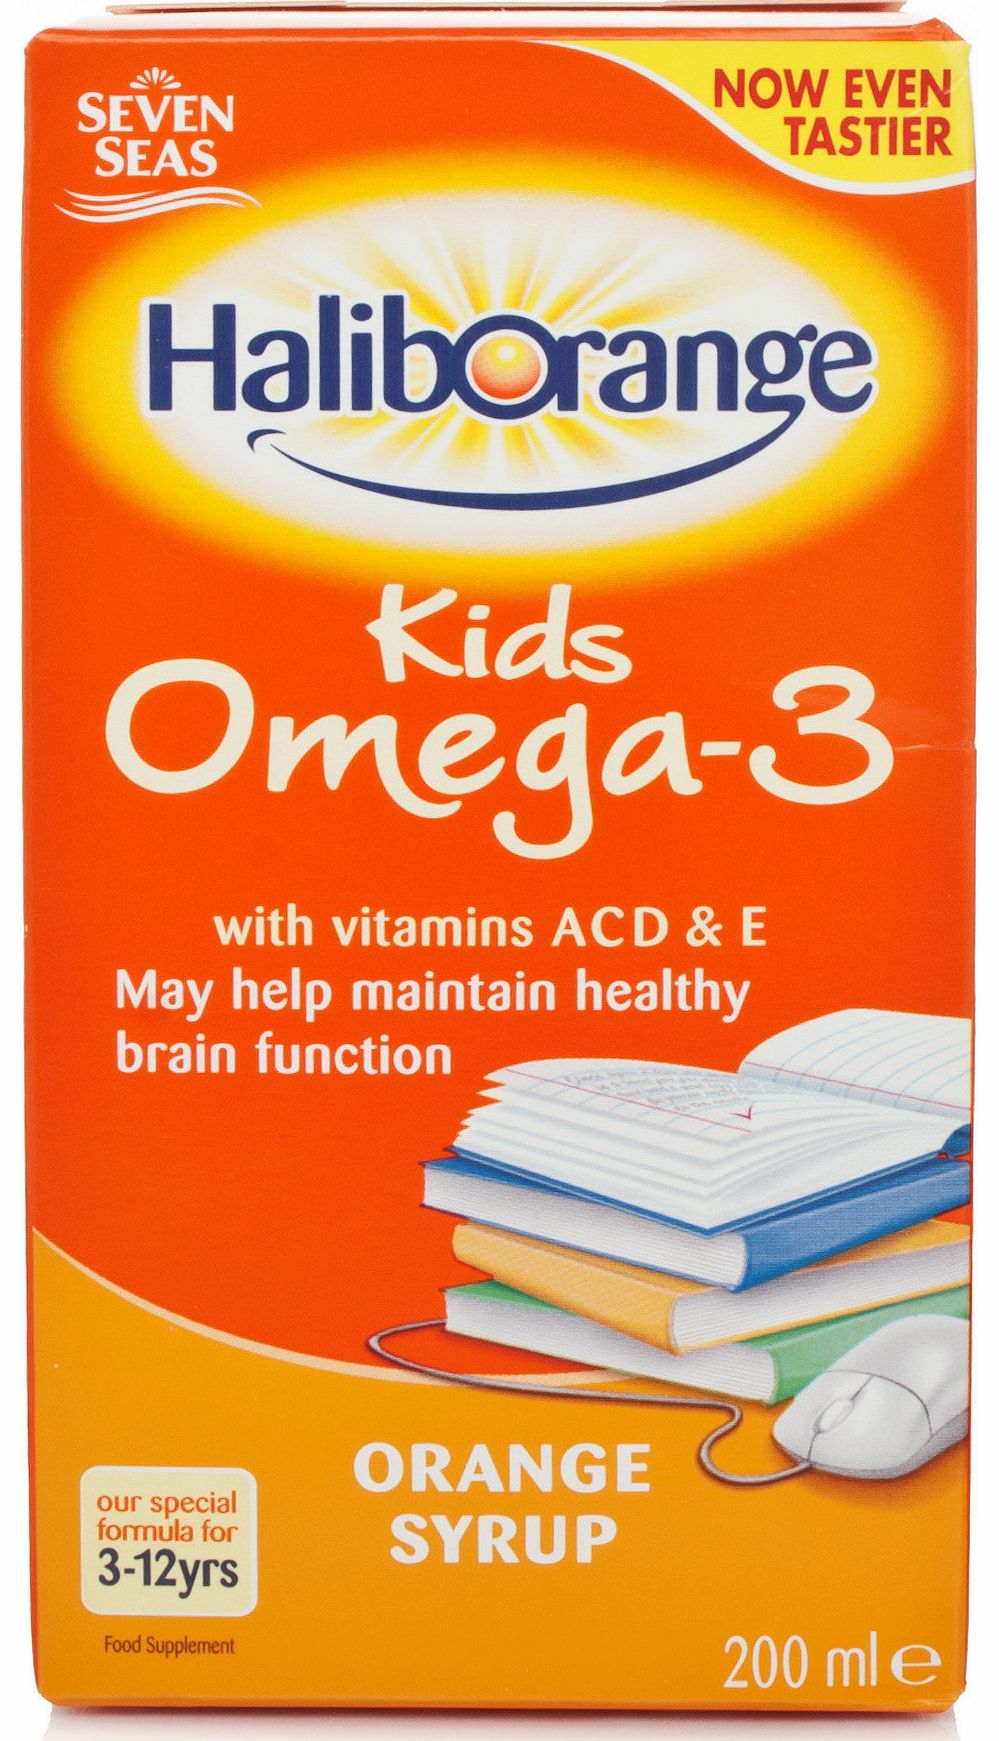 Haliborange Seven Seas Haliborange Kids Omega-3 Orange Syrup